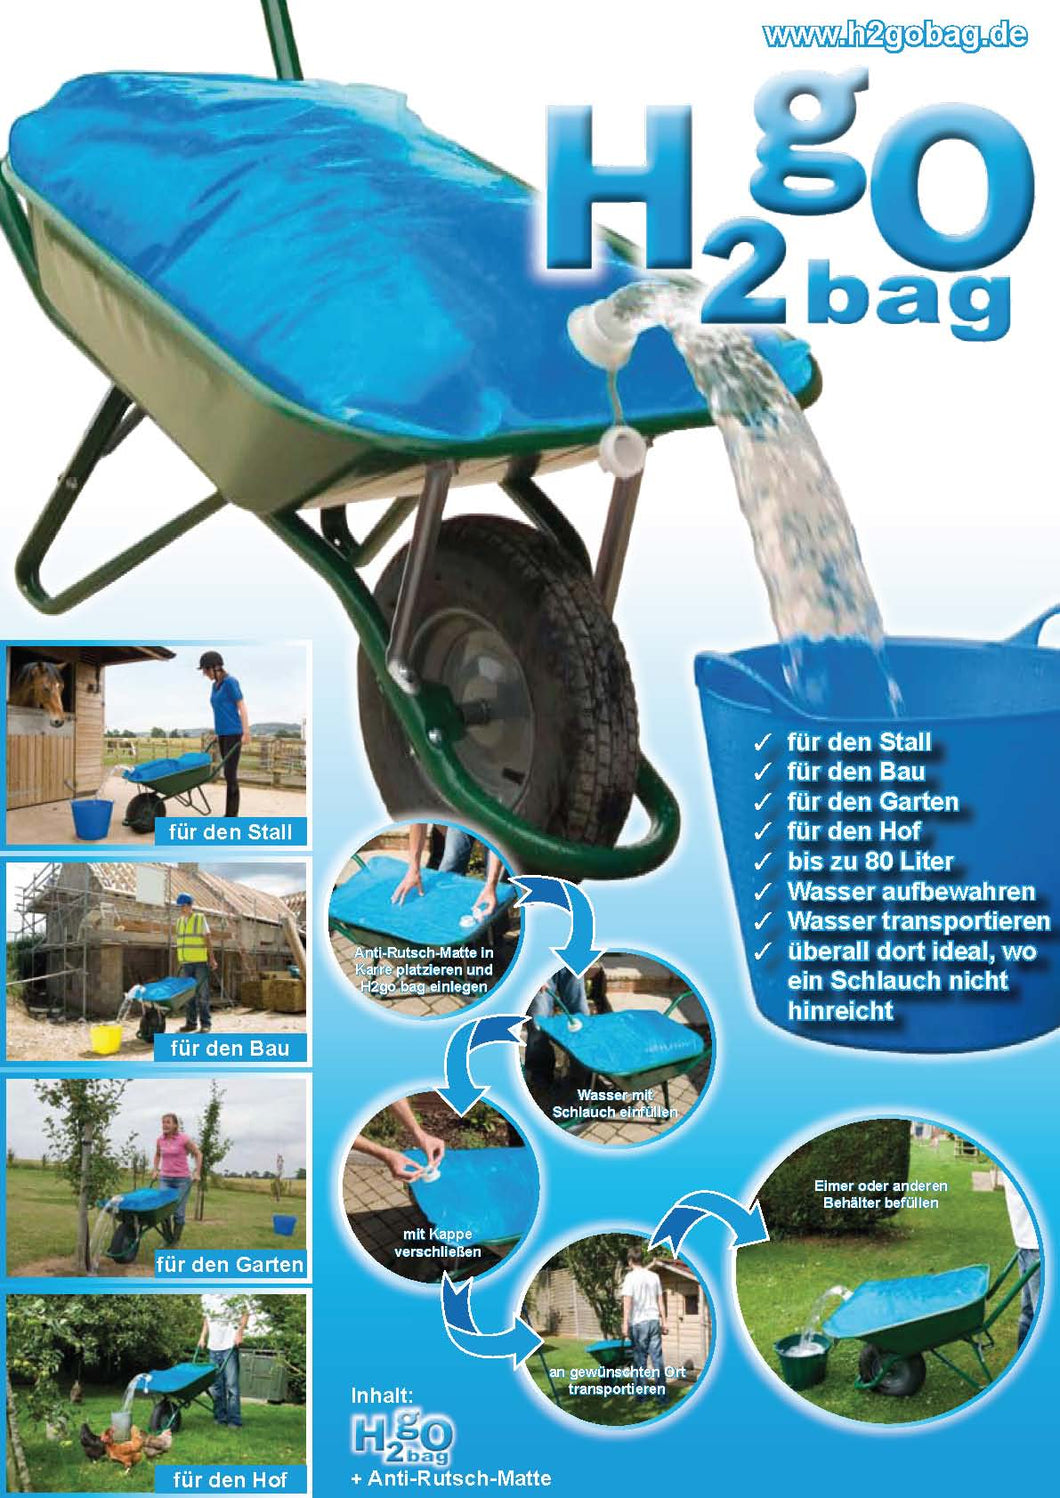 H2gObag - der 80 Liter Wassersack